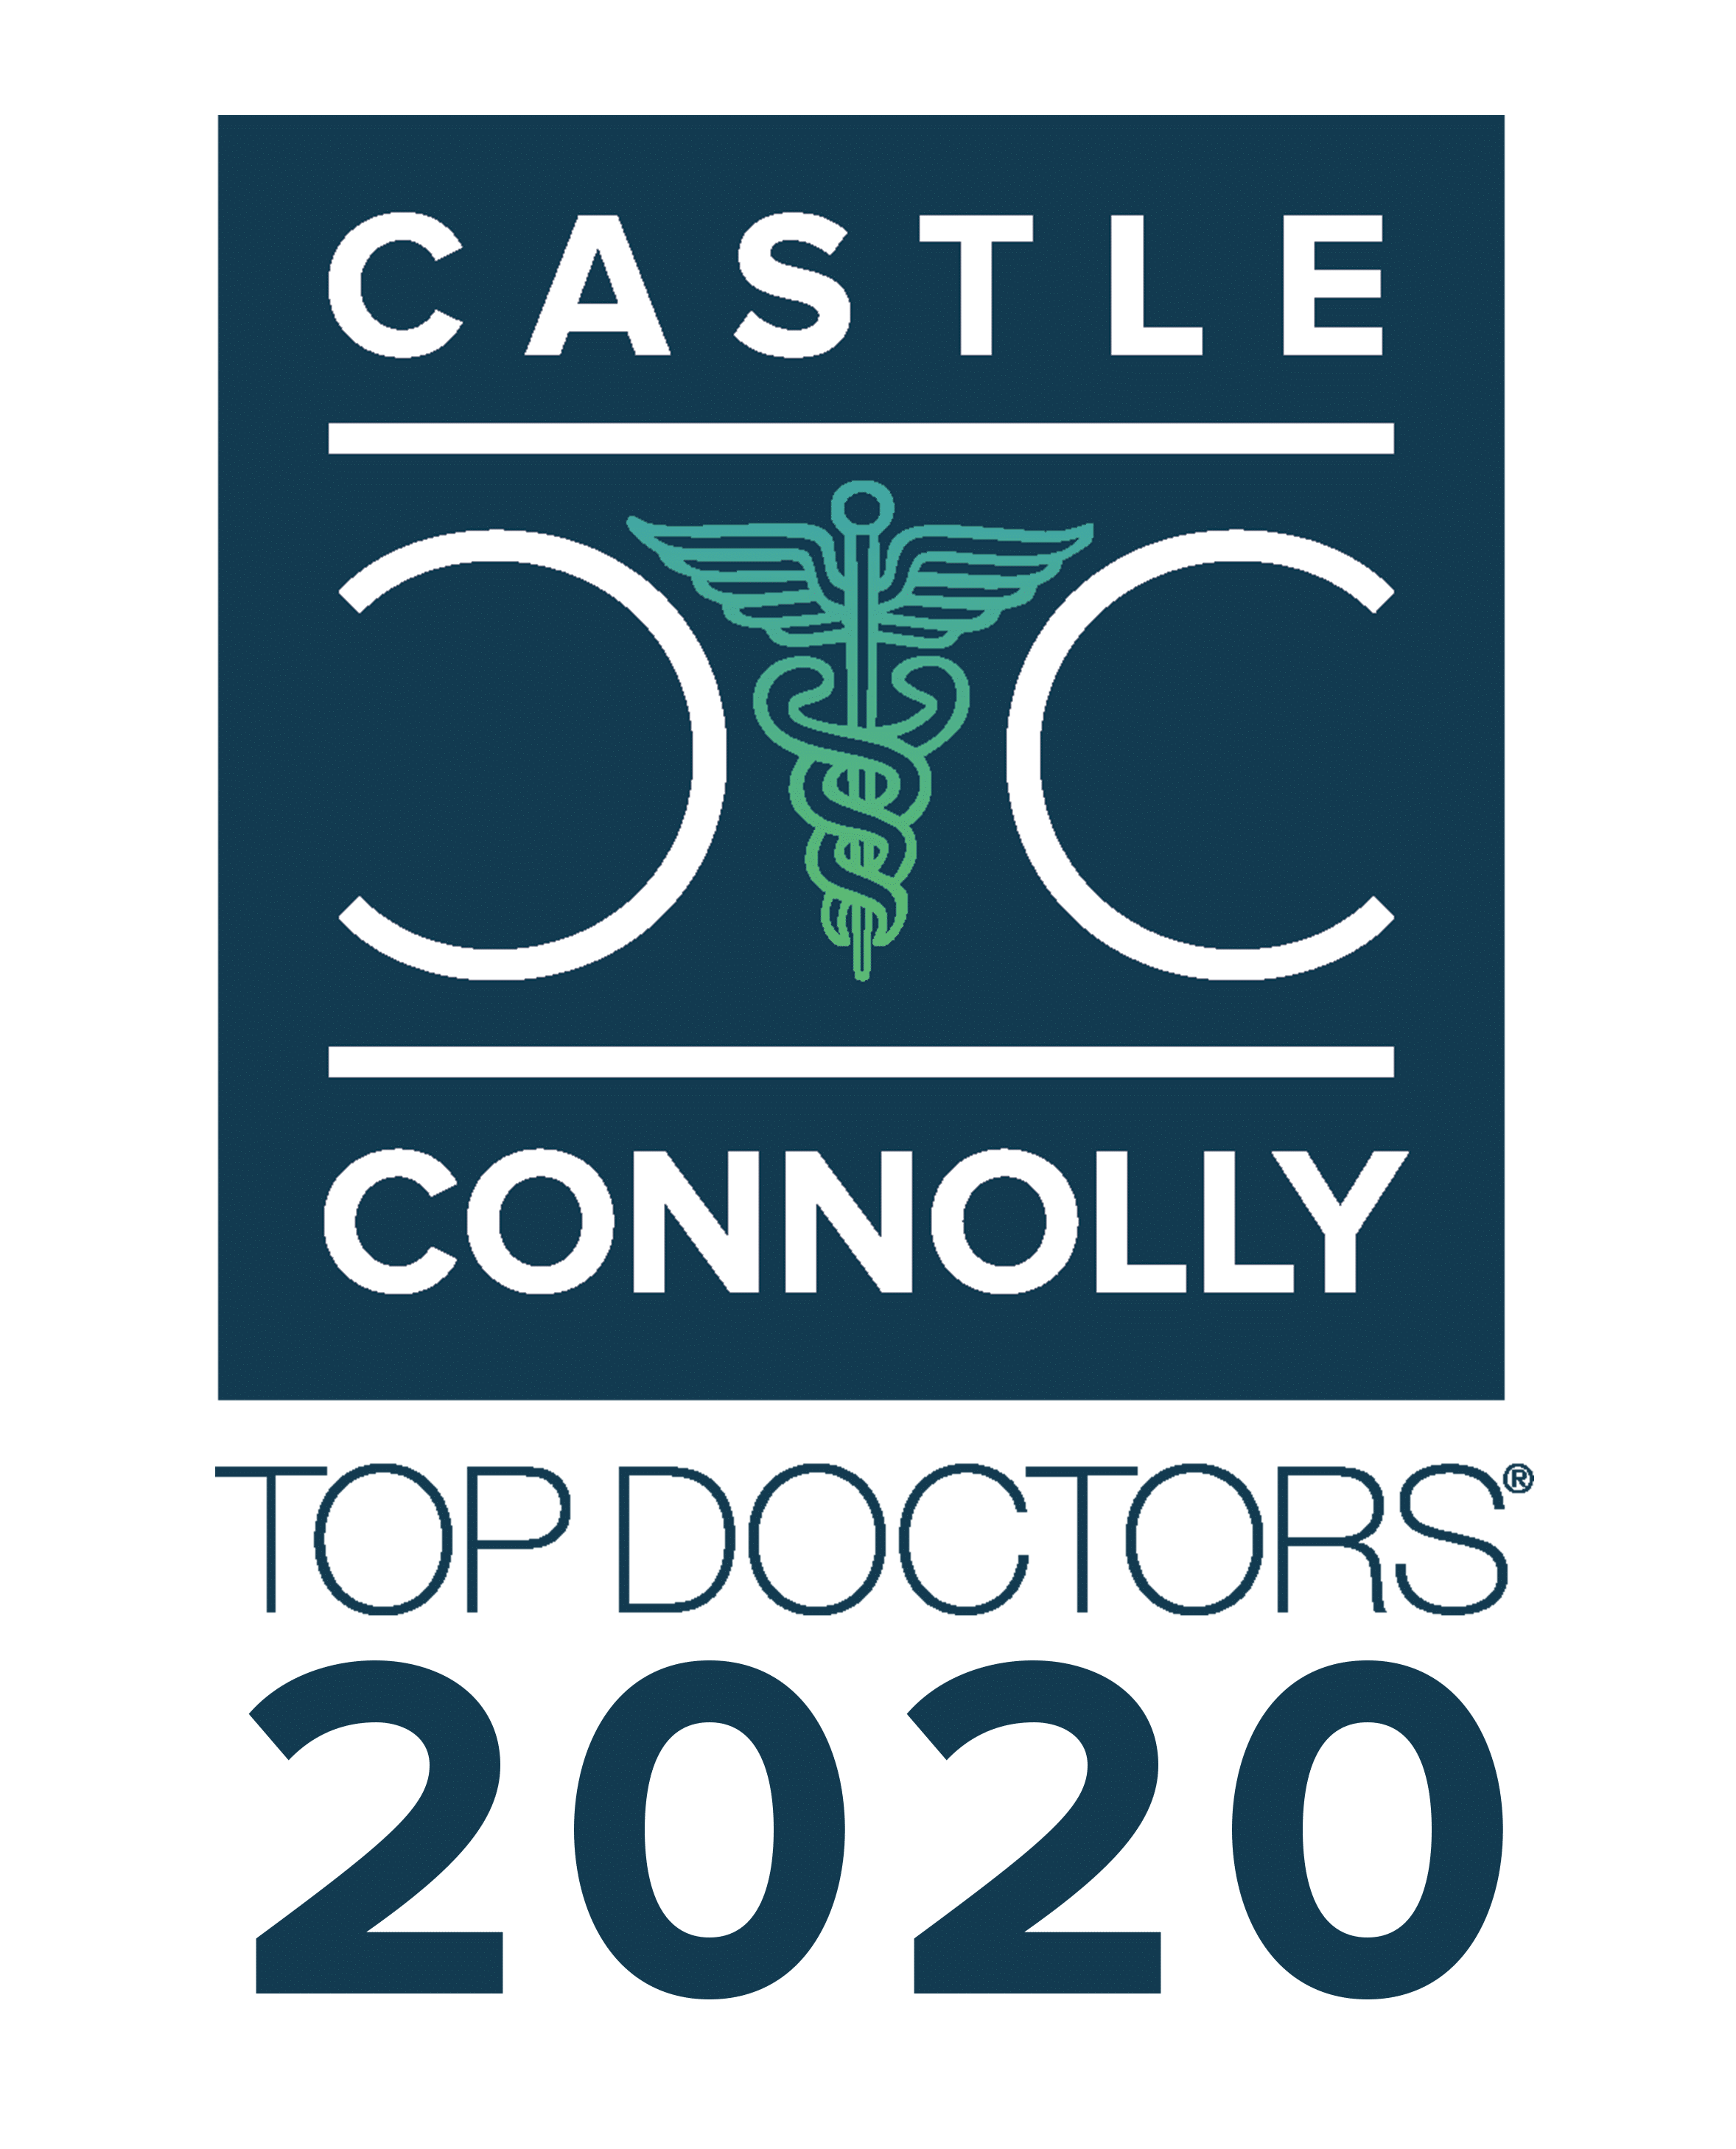 Castle Connolly Top Drs. 2020